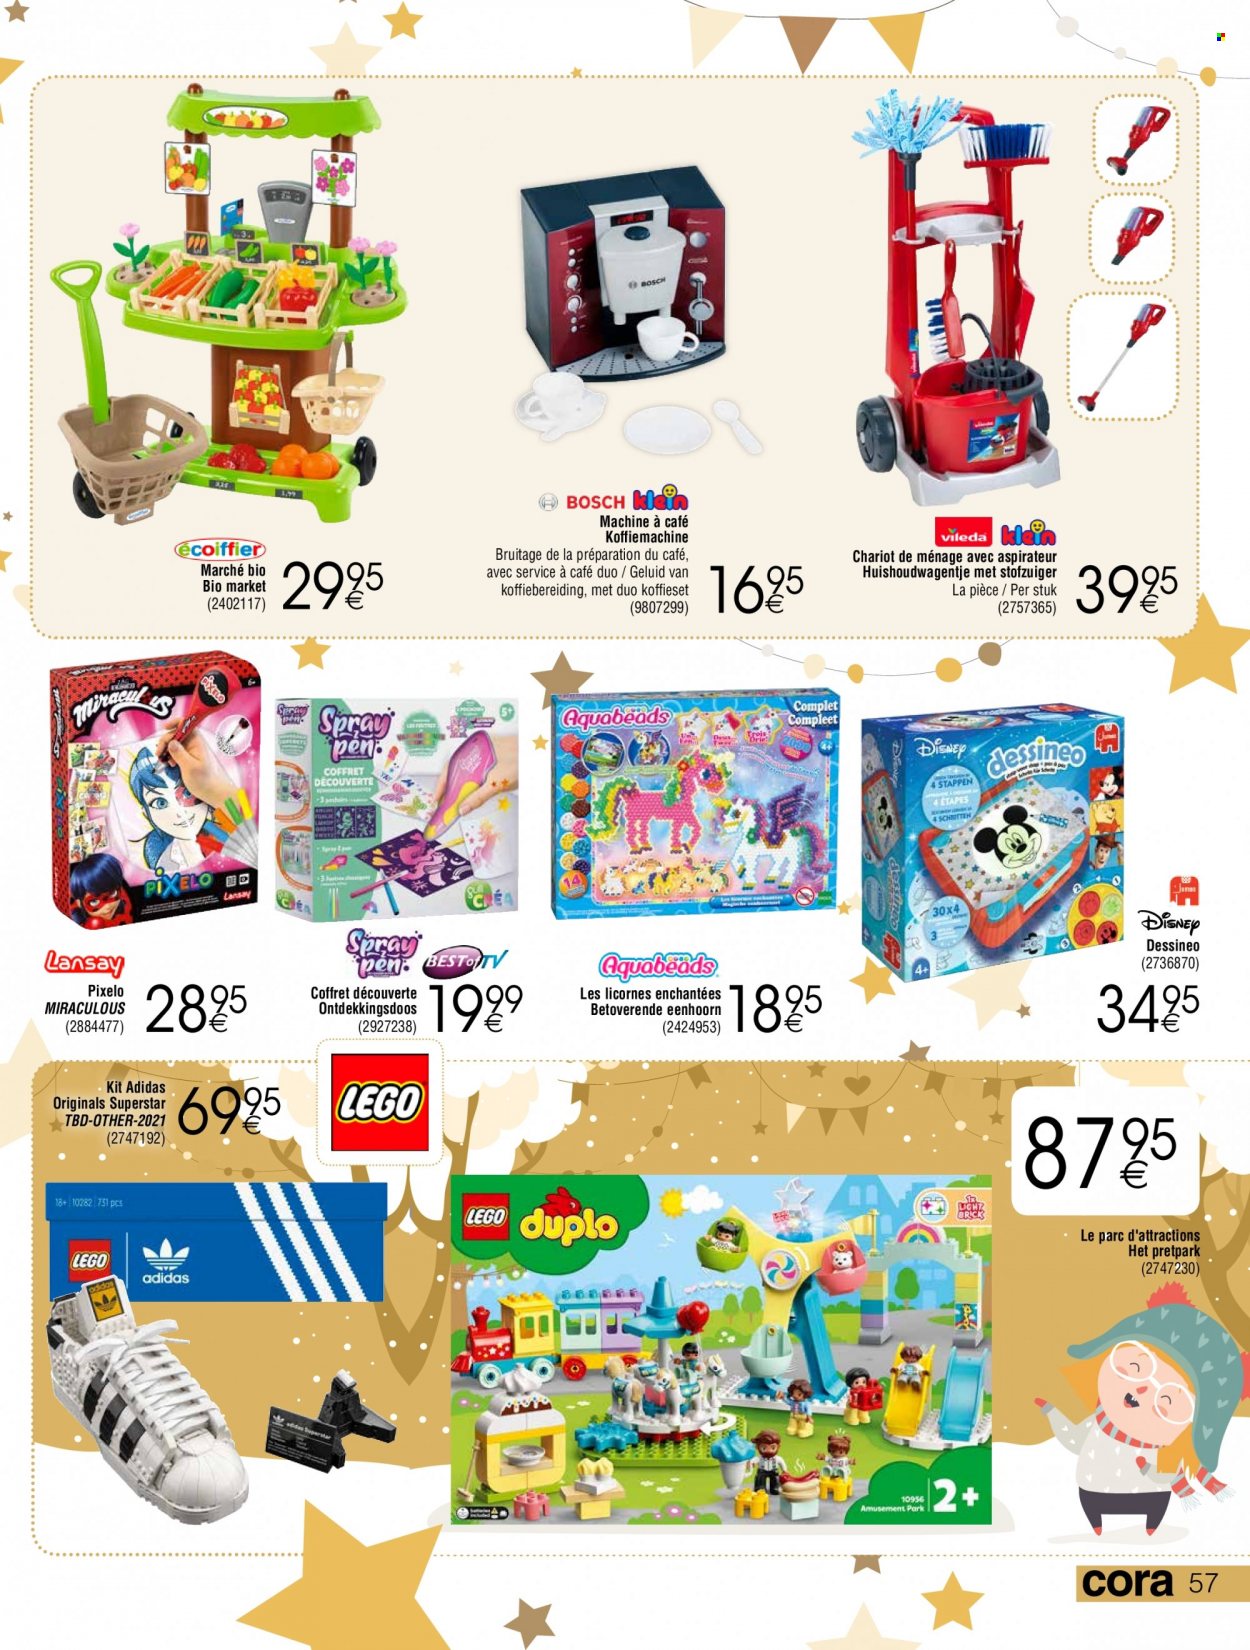 thumbnail - Cora-aanbieding - 26/11/2021 - 24/12/2021 -  producten in de aanbieding - Vileda, Disney, Adidas, Bosch, stofzuiger, eenhoorn, Aquabeads, Dessineo, LEGO, LEGO DUPLO. Pagina 57.